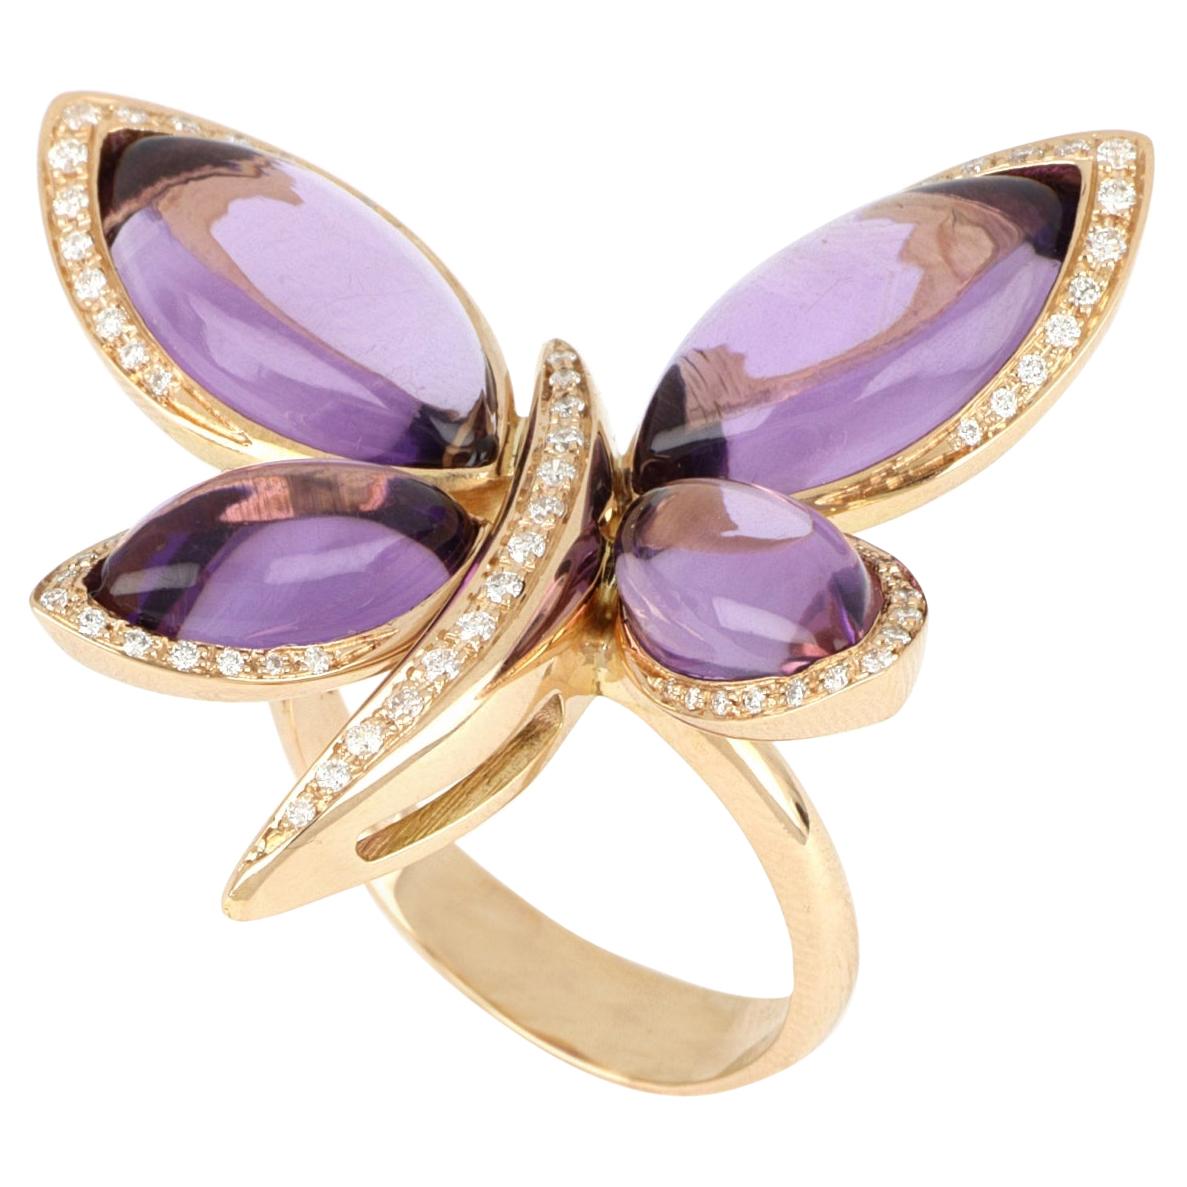 Les Papillons Bague en or rose 18 carats avec amathyste violette et diamants